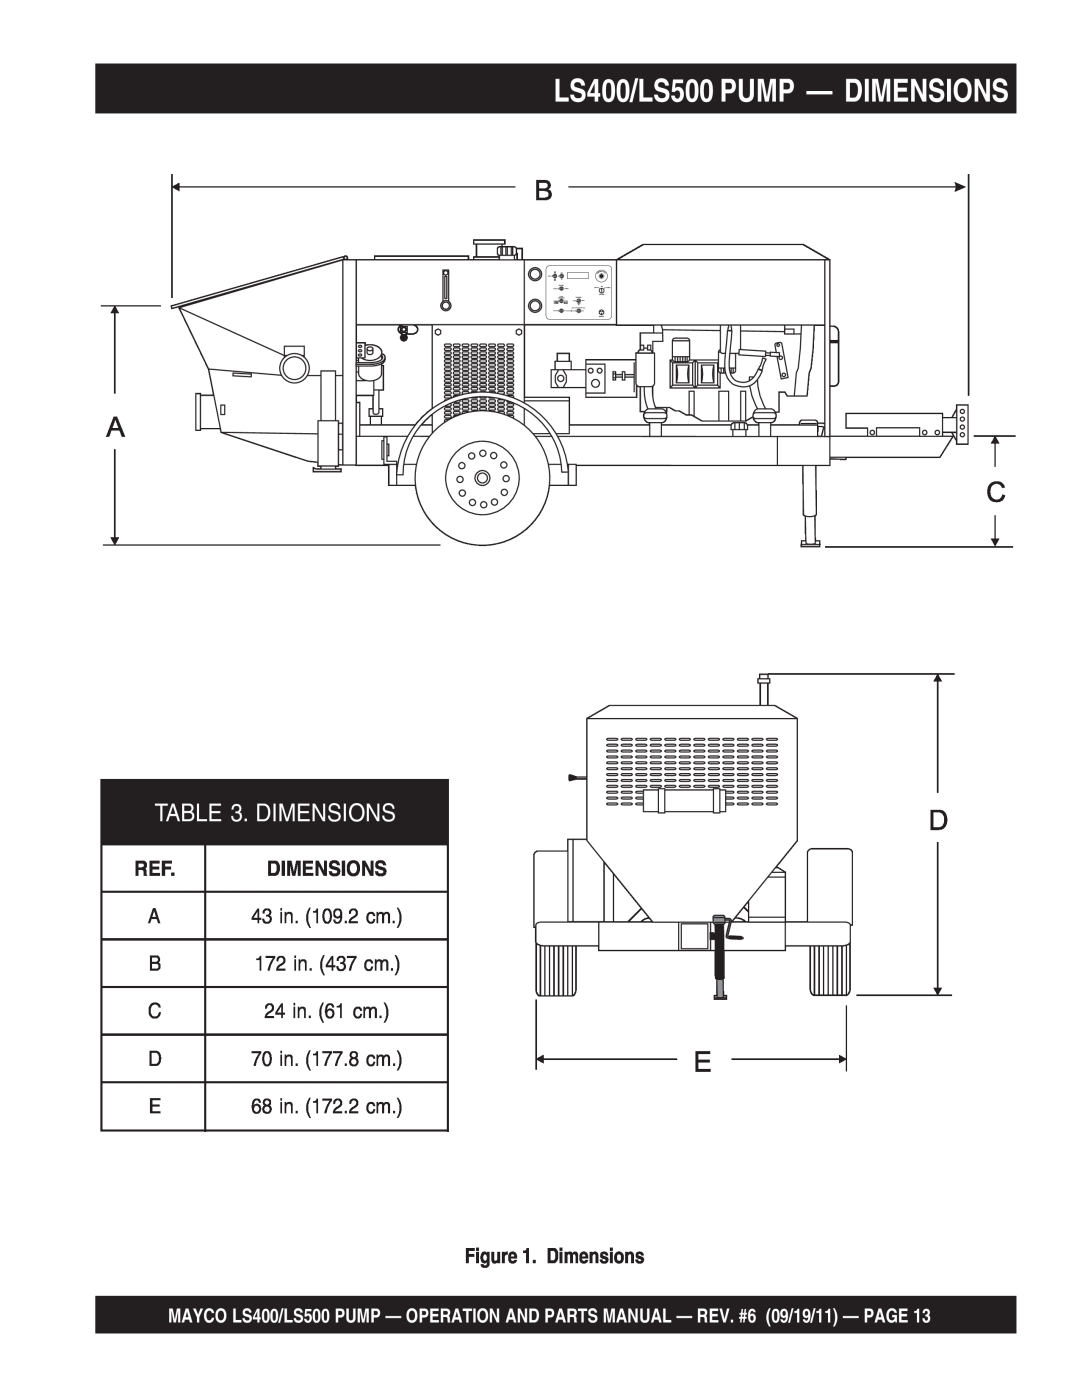 Multiquip manual LS400/LS500 PUMP - DIMENSIONS, Dimensions 